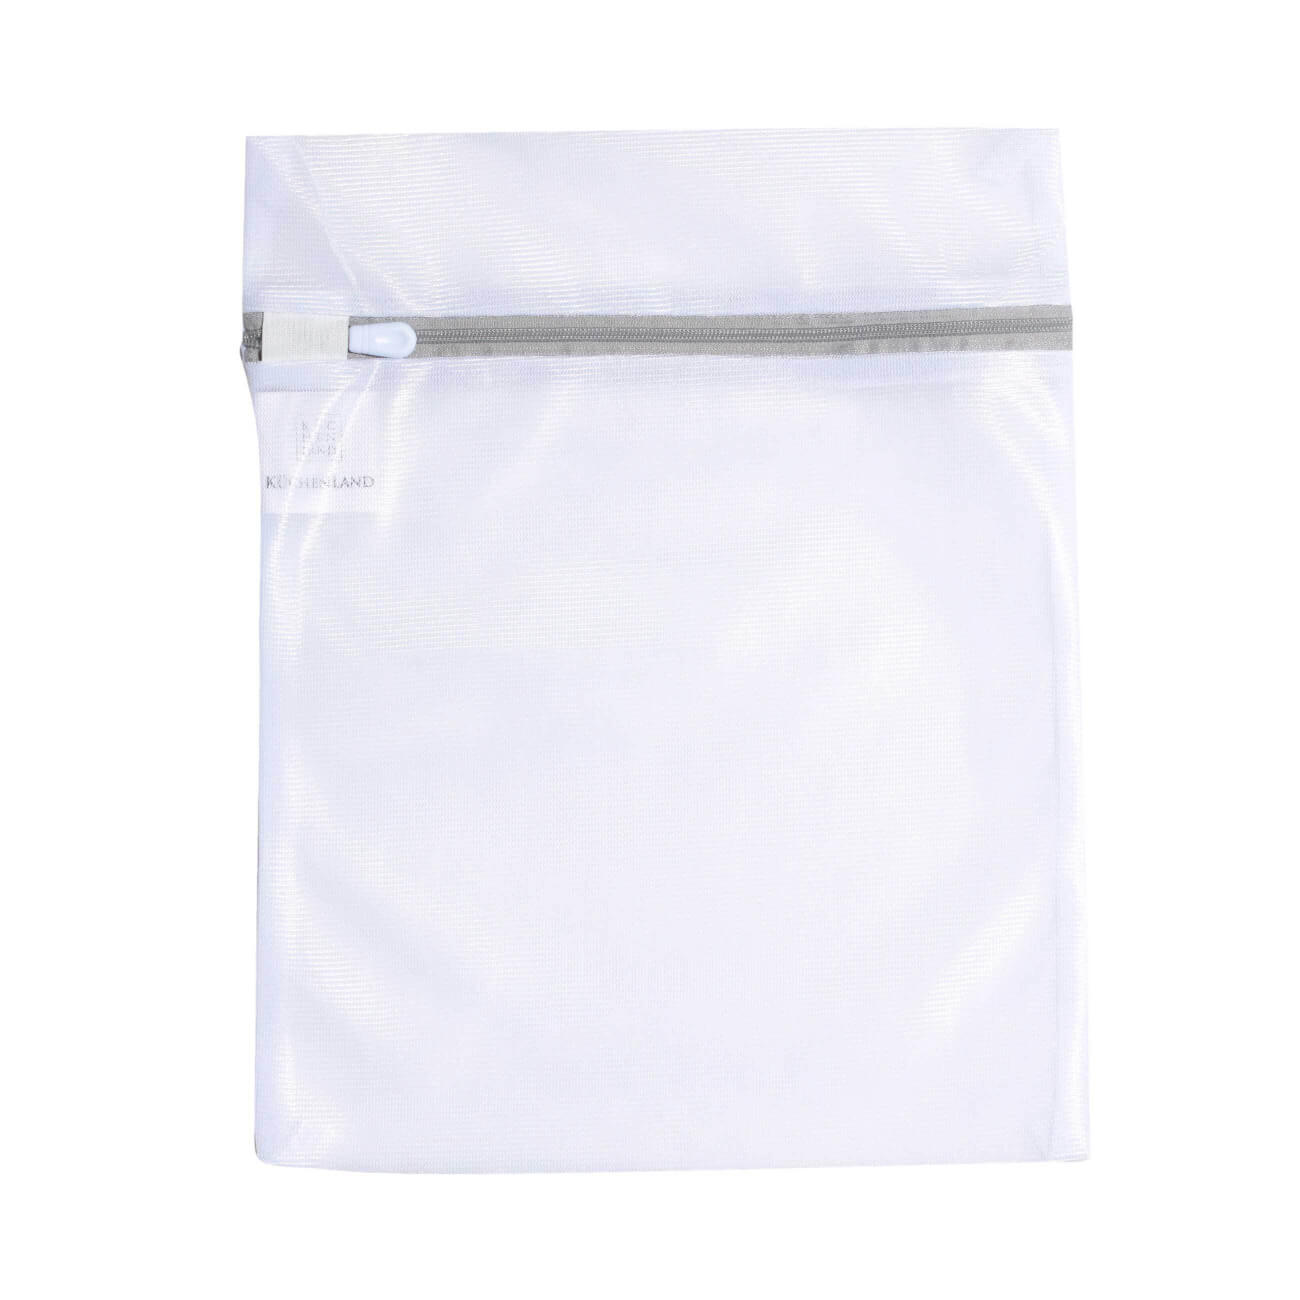 Мешок для стирки нижнего белья, 25х30 см, полиэстер, бело-серый, Safety plus мешок для стирки нижнего белья 25х30 см полиэстер бело серый safety plus